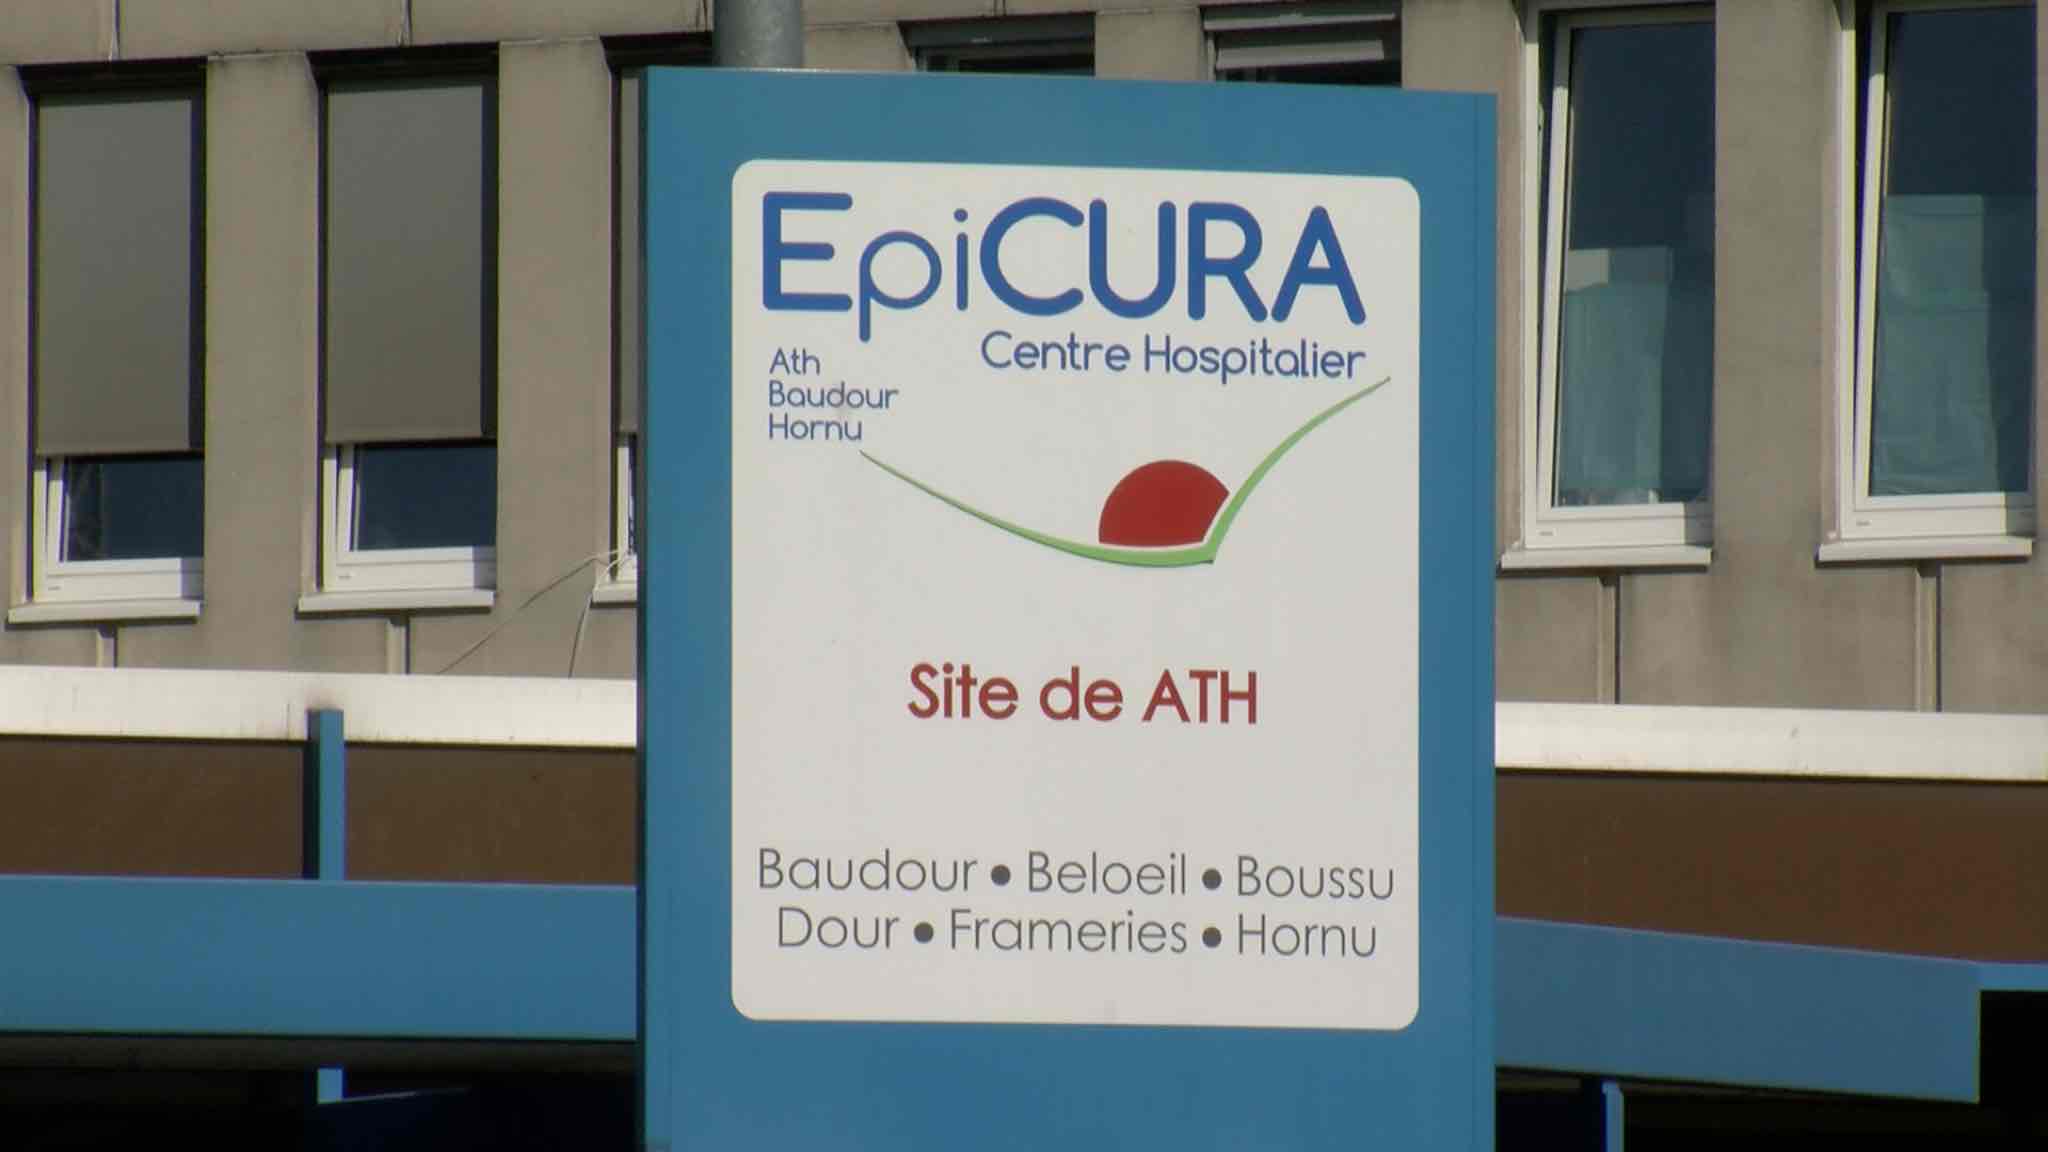 Plusieurs hôpitaux, dont EpiCURA, s'unissent pour la rédaction d'une carte blanche